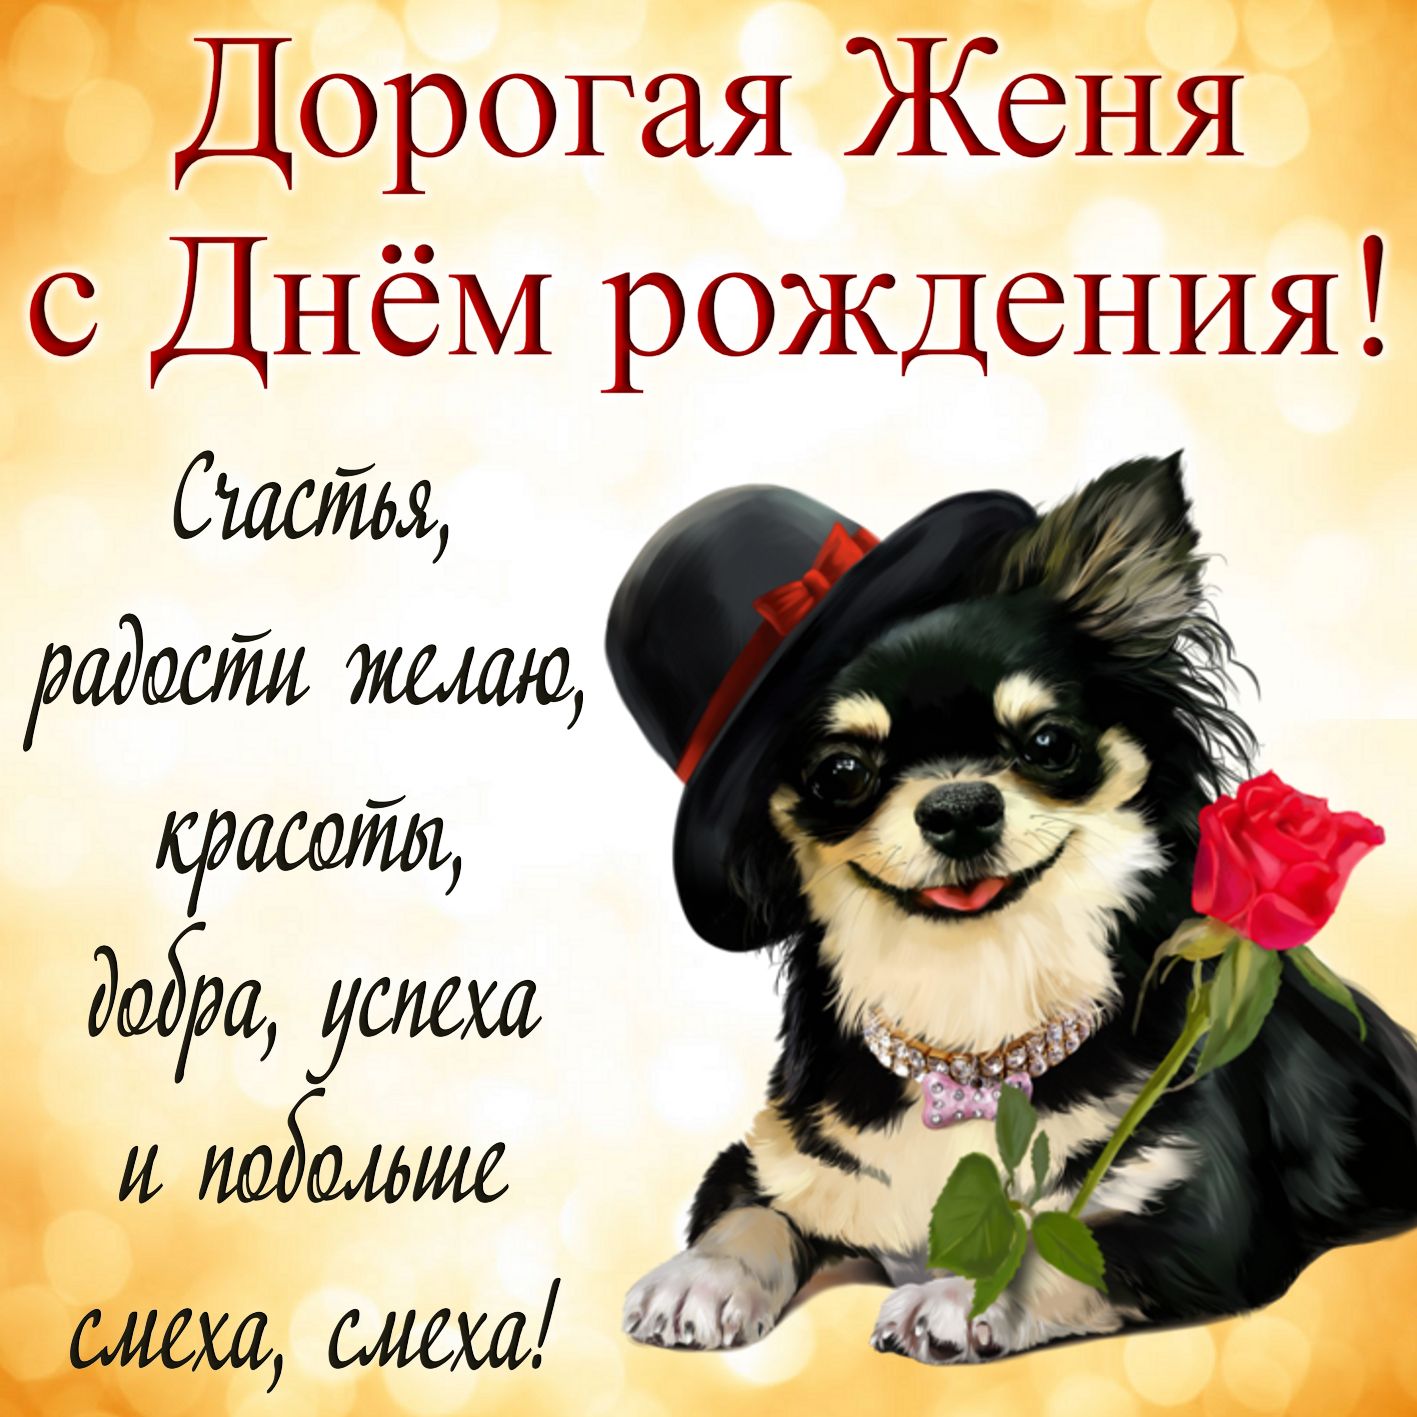 Открытка на День рождения Евгении - милая собачка в шляпке и пожелание